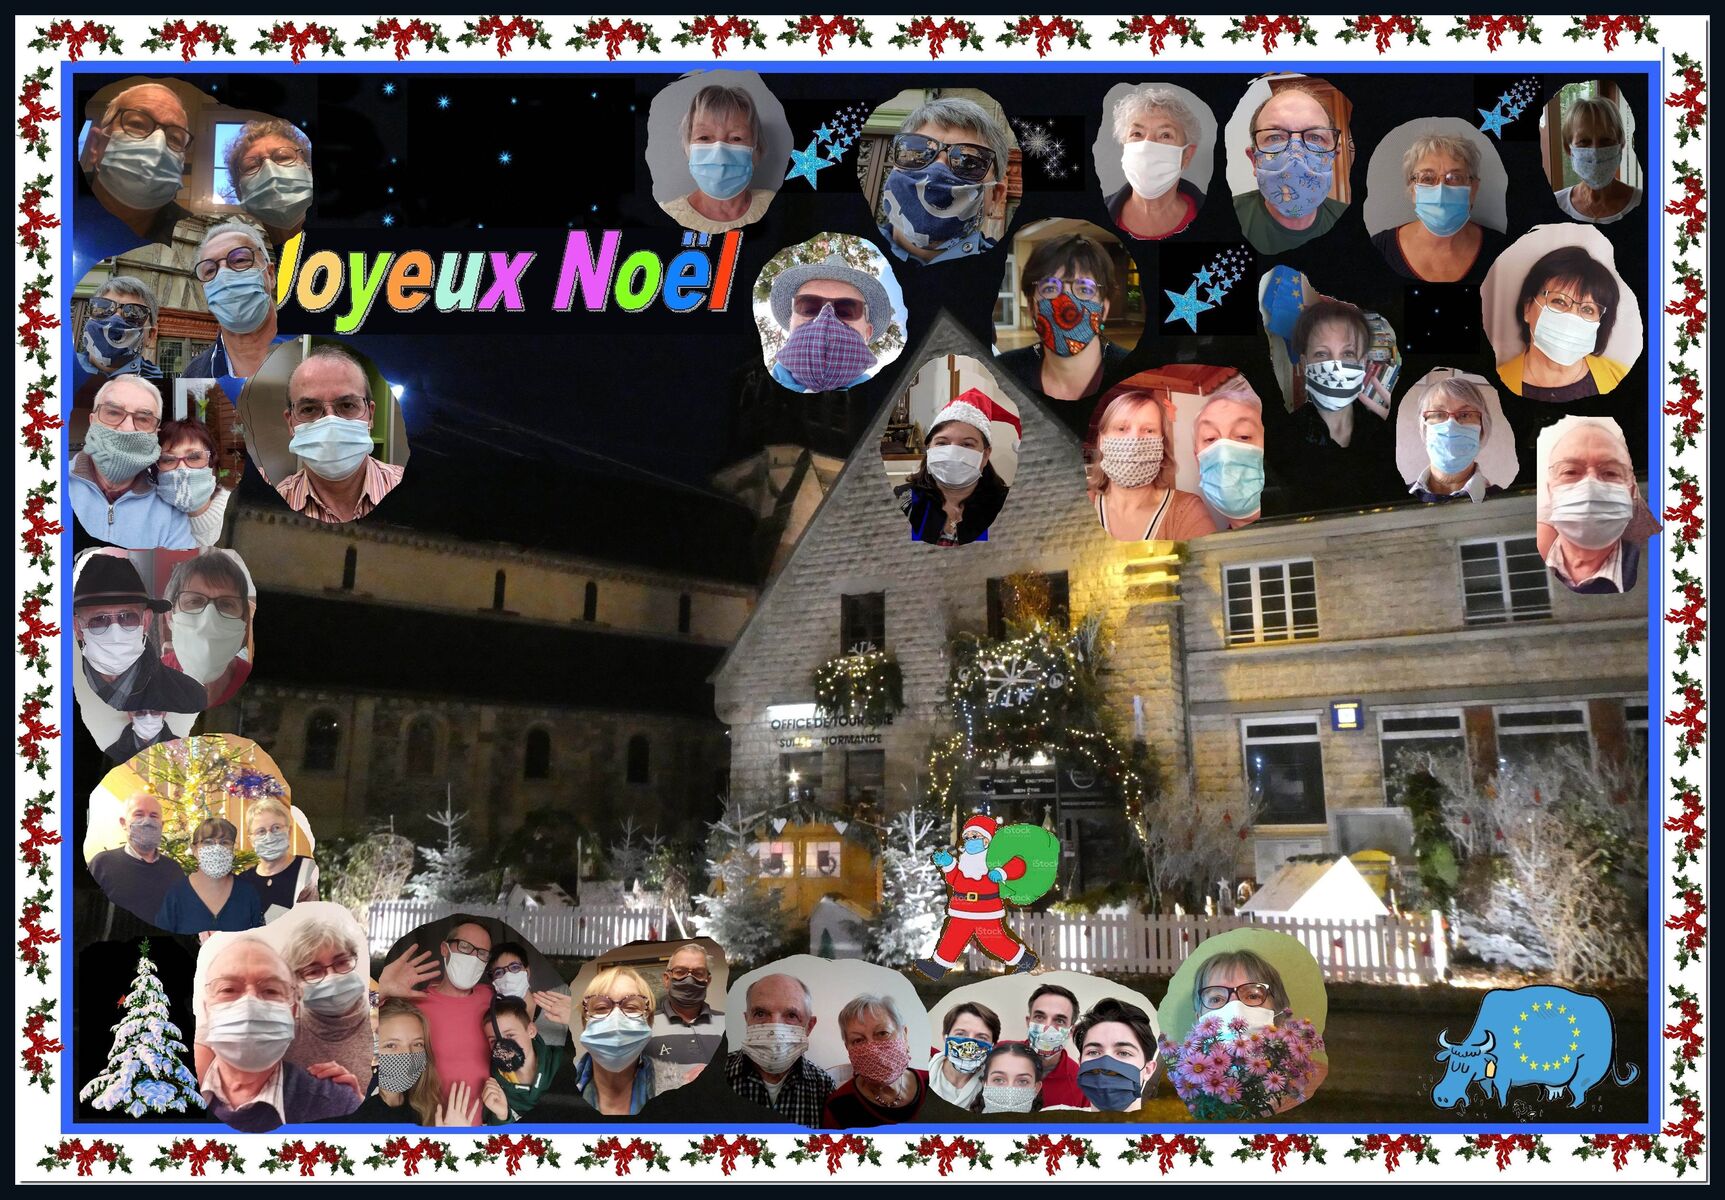 Fotocollage mit vielen Einzelfotos von Menschen mit Mund-Nasen-Bedeckung, in der Mitte steht 'Joyeux Noel' und im Hintergrund ist ein weihnachtlich geschmückter Ort zu sehen